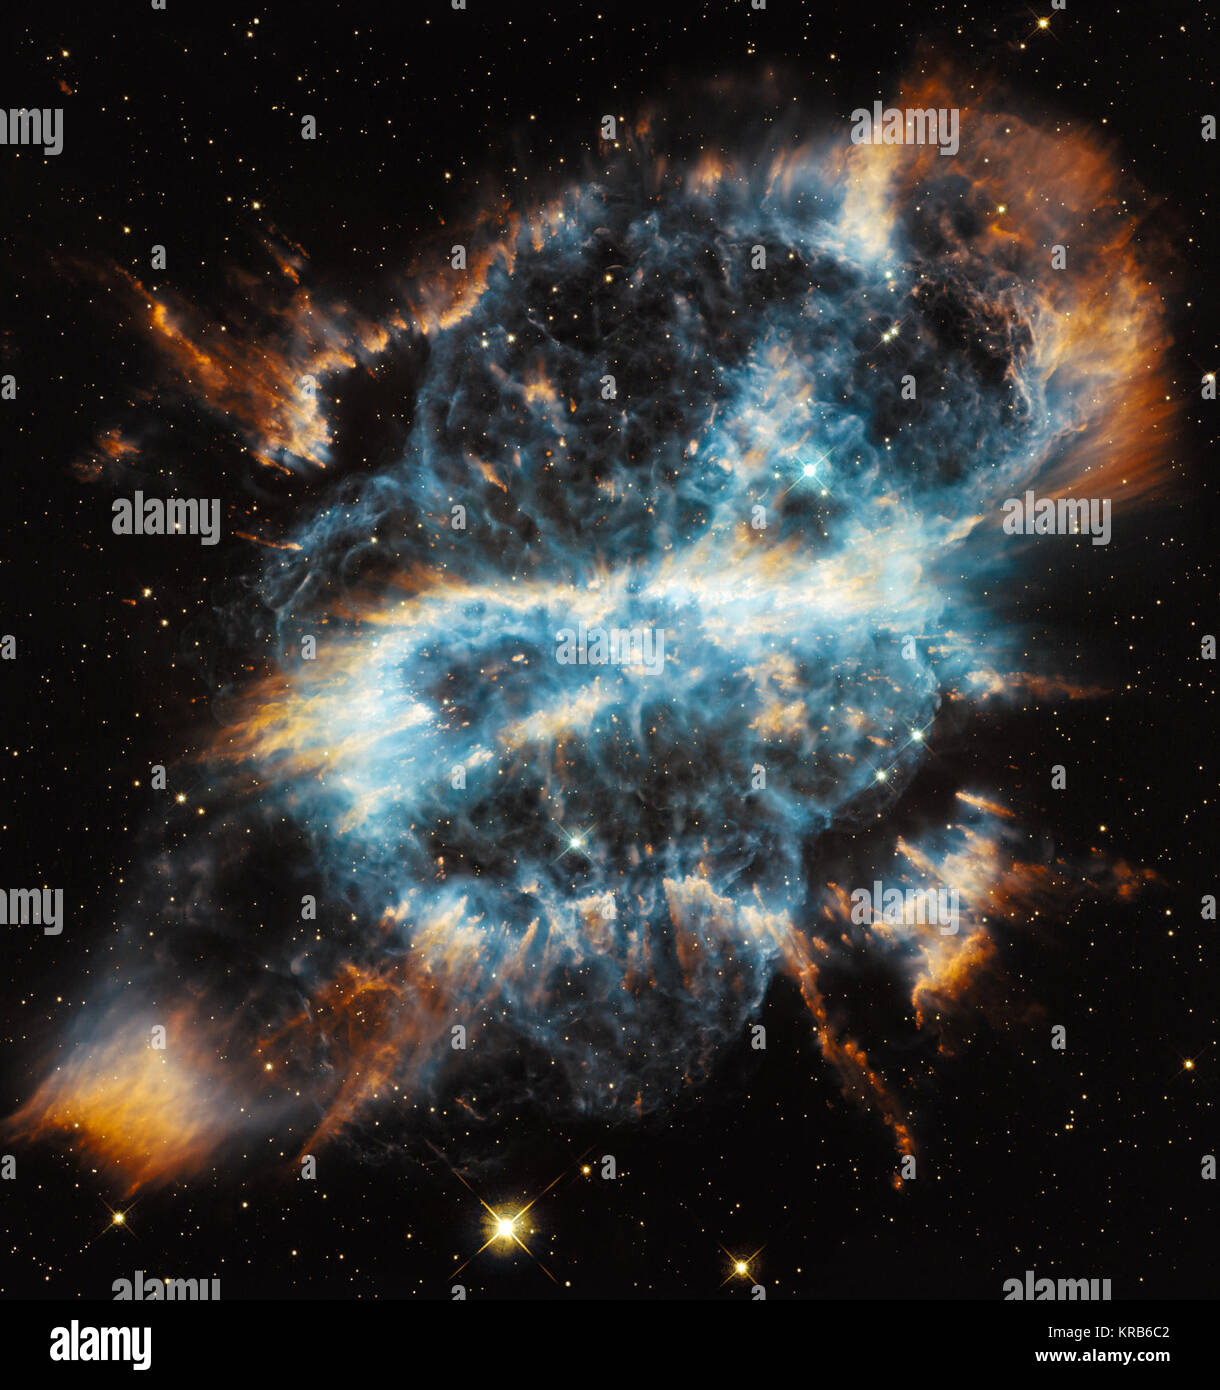 Mit dem Hubble-Weltraumteleskop der NASA/ESA feiert die Saison mit einem eindrucksvollen Bild Der planetarische Nebel NGC 5189. Die komplizierte Struktur der stellaren Eruption sieht aus wie eine riesige und bunten Band im Raum. Hubble snaps NGC 5189 Stockfoto